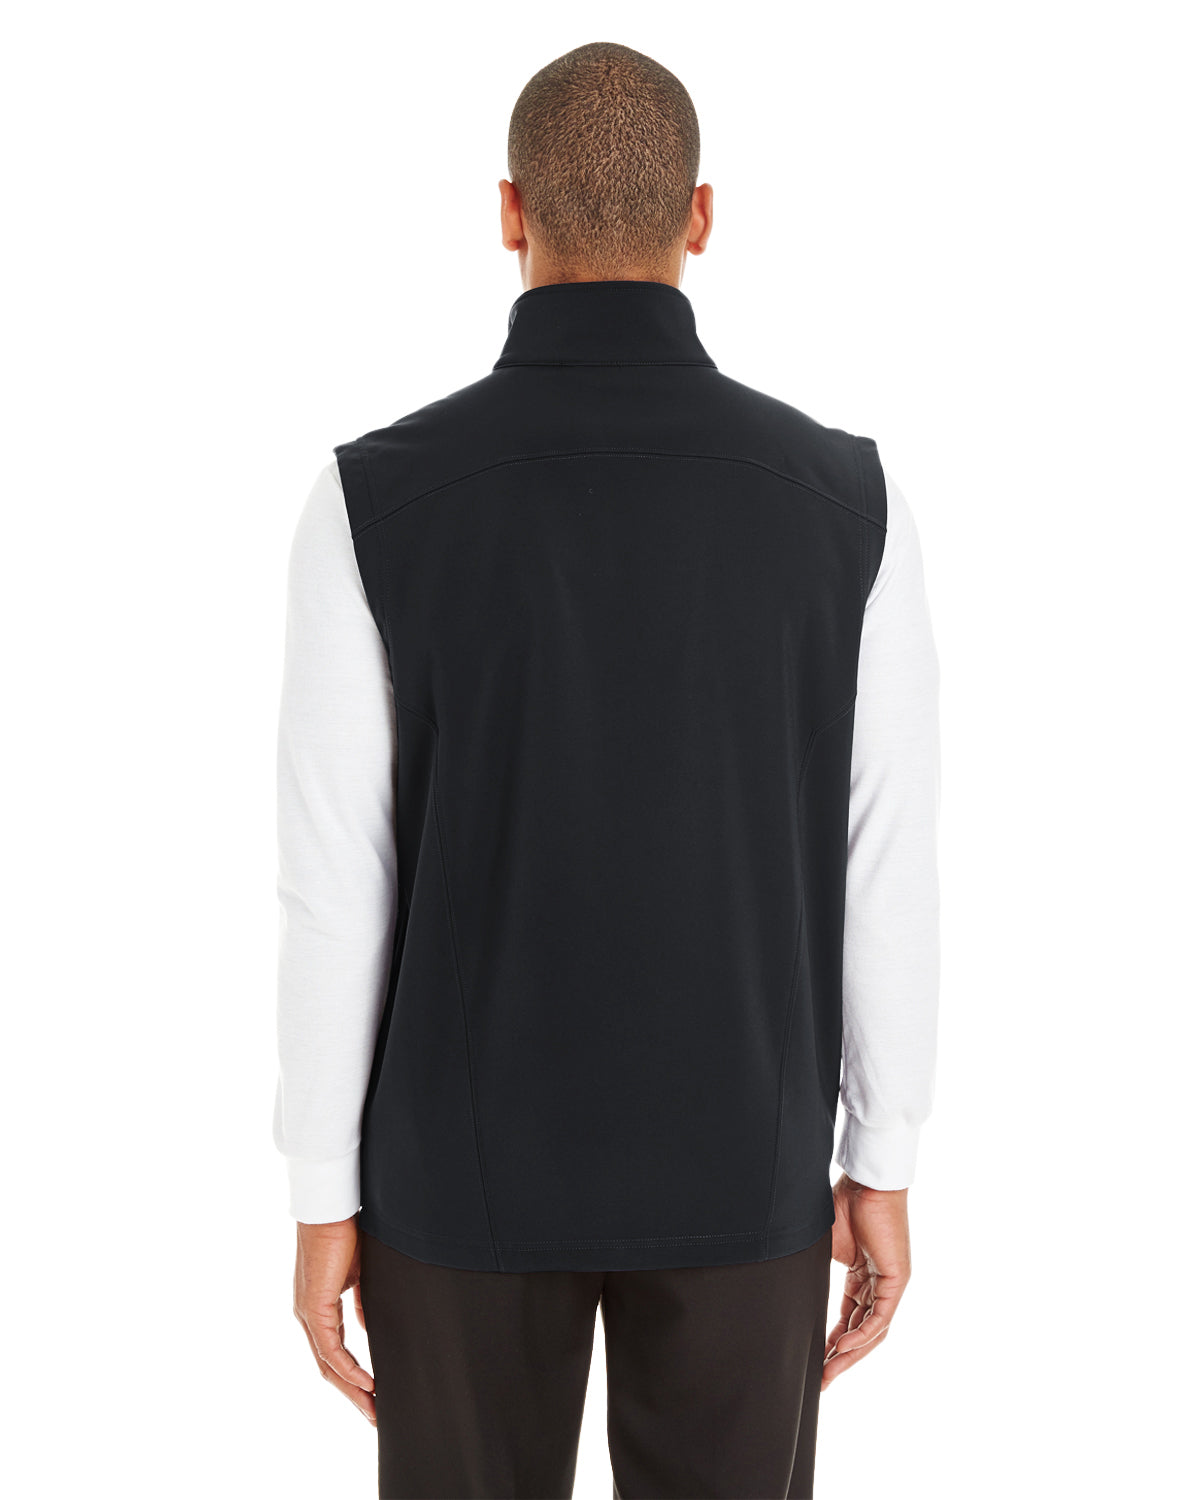 CE701 – Ash City – Core 365 Men’s Two-Layer Soft Shell Vest